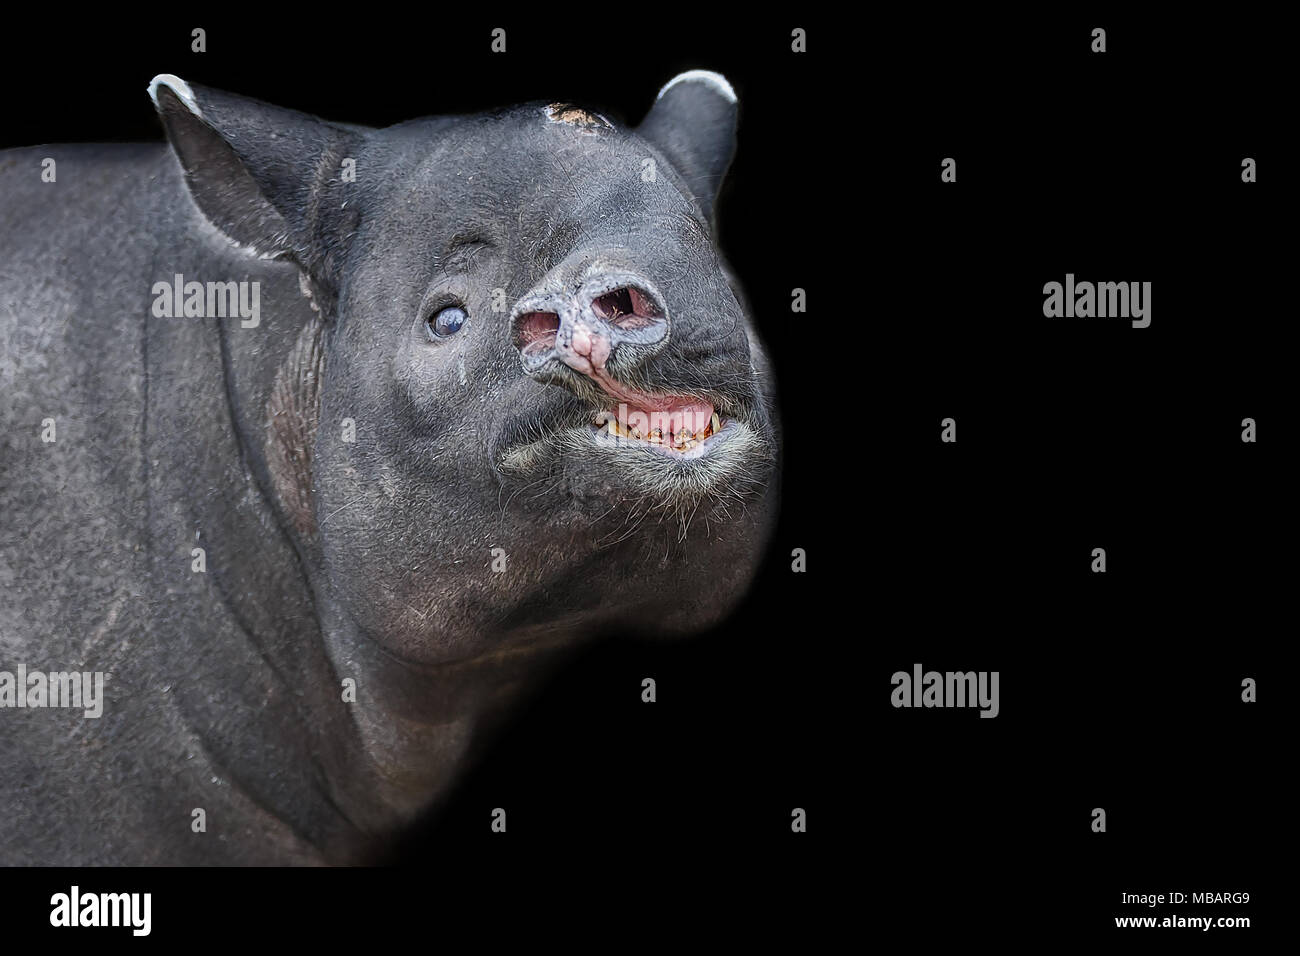 Asian tapiro testa isolata sul backround nero. Il tapiro: la malese Foto Stock